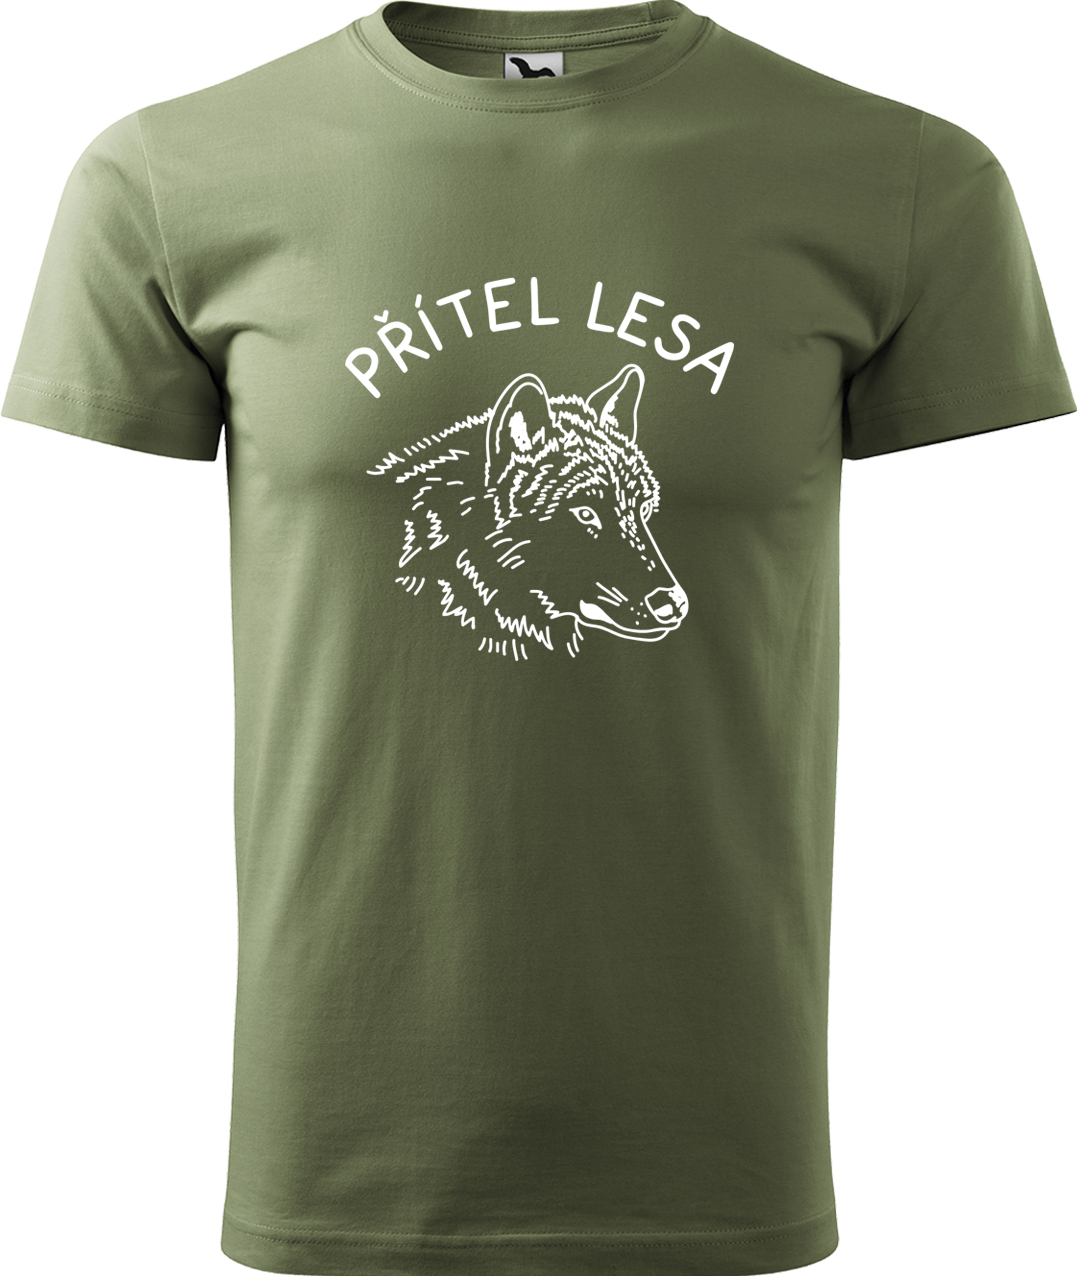 Pánské tričko s vlkem - Přítel lesa Velikost: 3XL, Barva: Světlá khaki (28), Střih: pánský